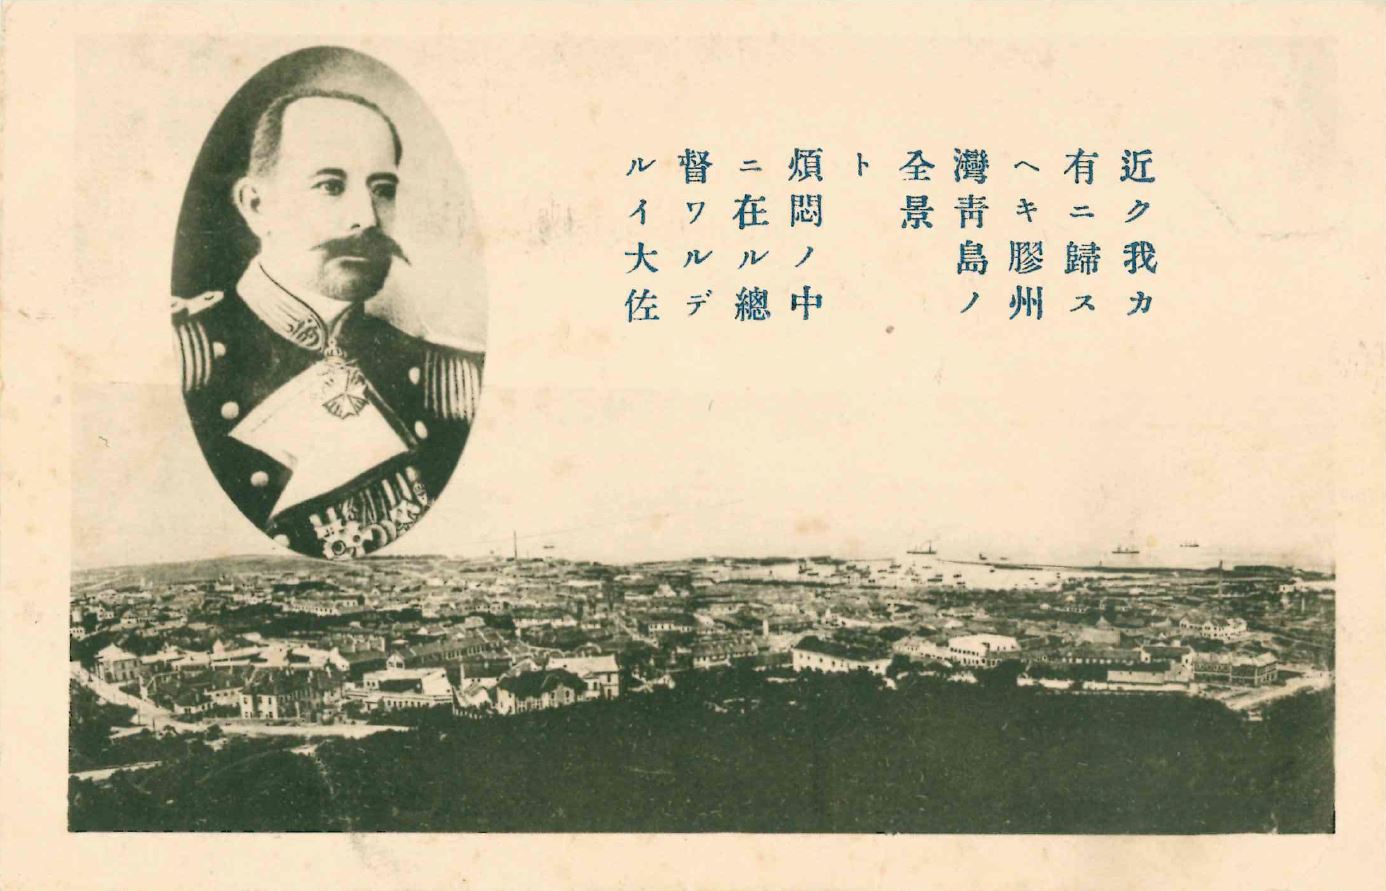 Postkarte der ehemaligen deutschen Kolonie Qingdao nach der japanischen Übernahme 1914.